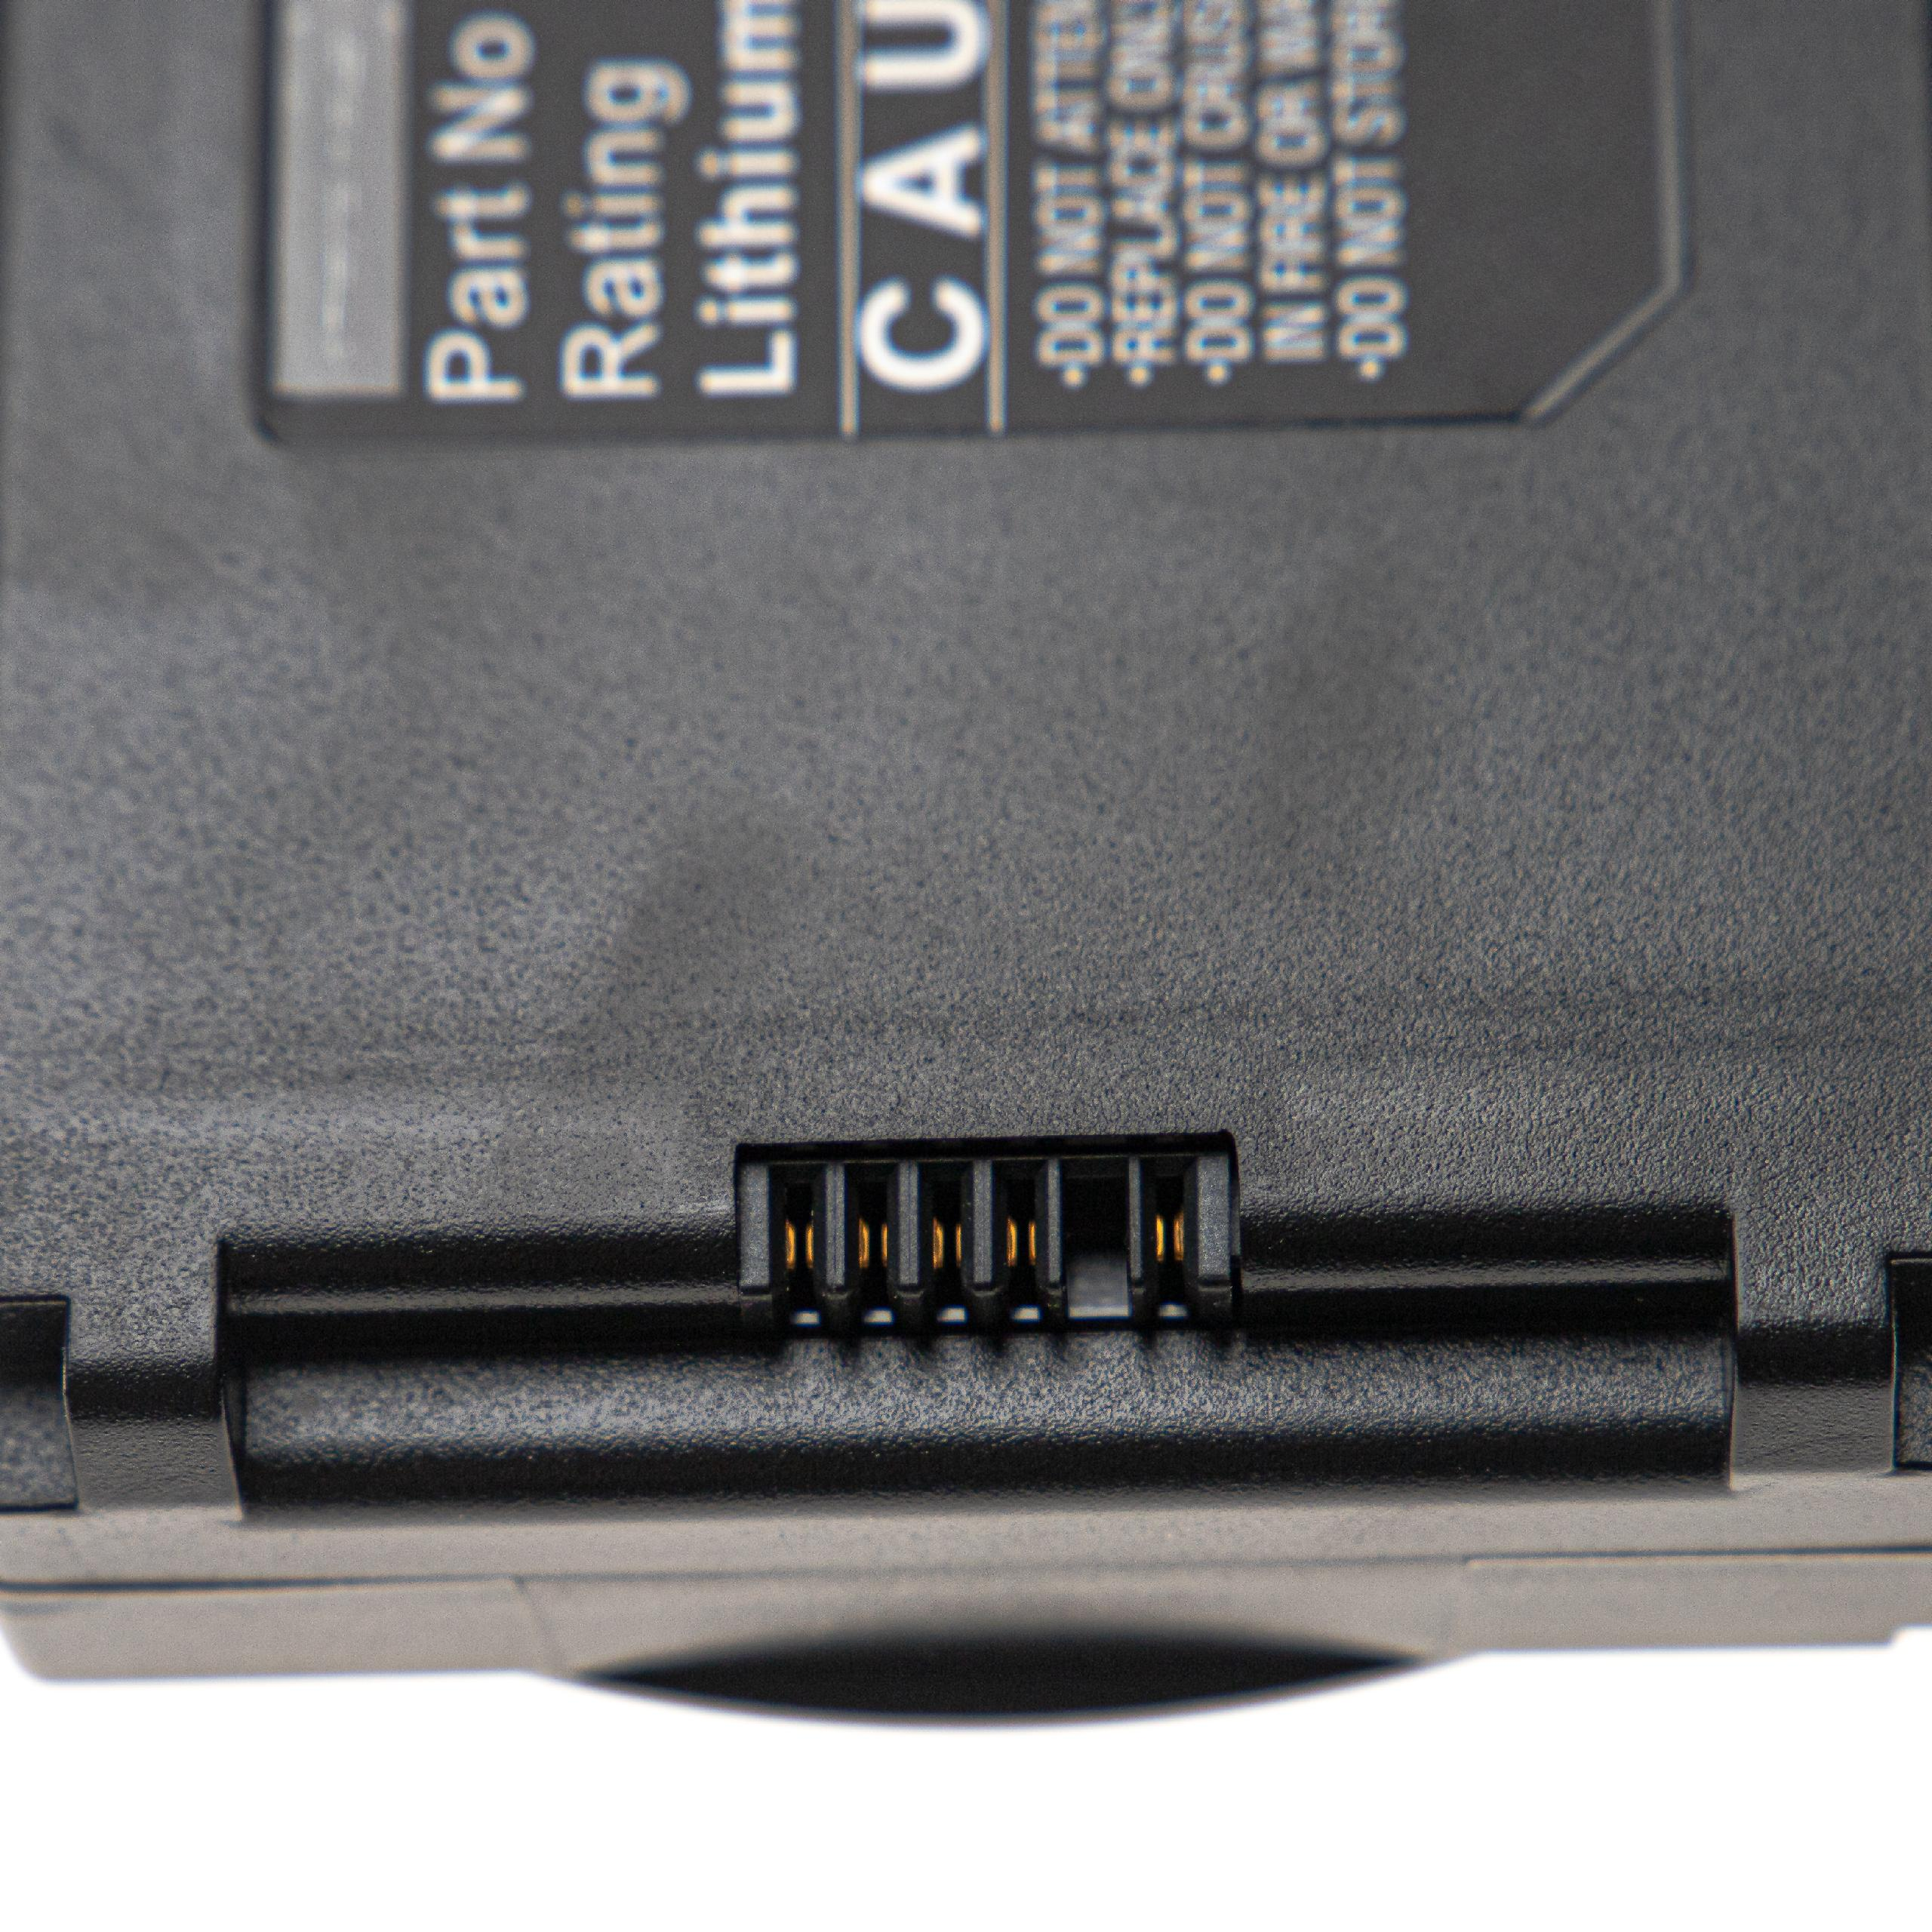 Volt, - 6800 6700, VSM VSM Akku kompatibel mit Welch Spot Li-Ion VSM VSM Connex Allyn 11.1 6400, Medizintechnik, Vital VHBW 7800 6500, Signs